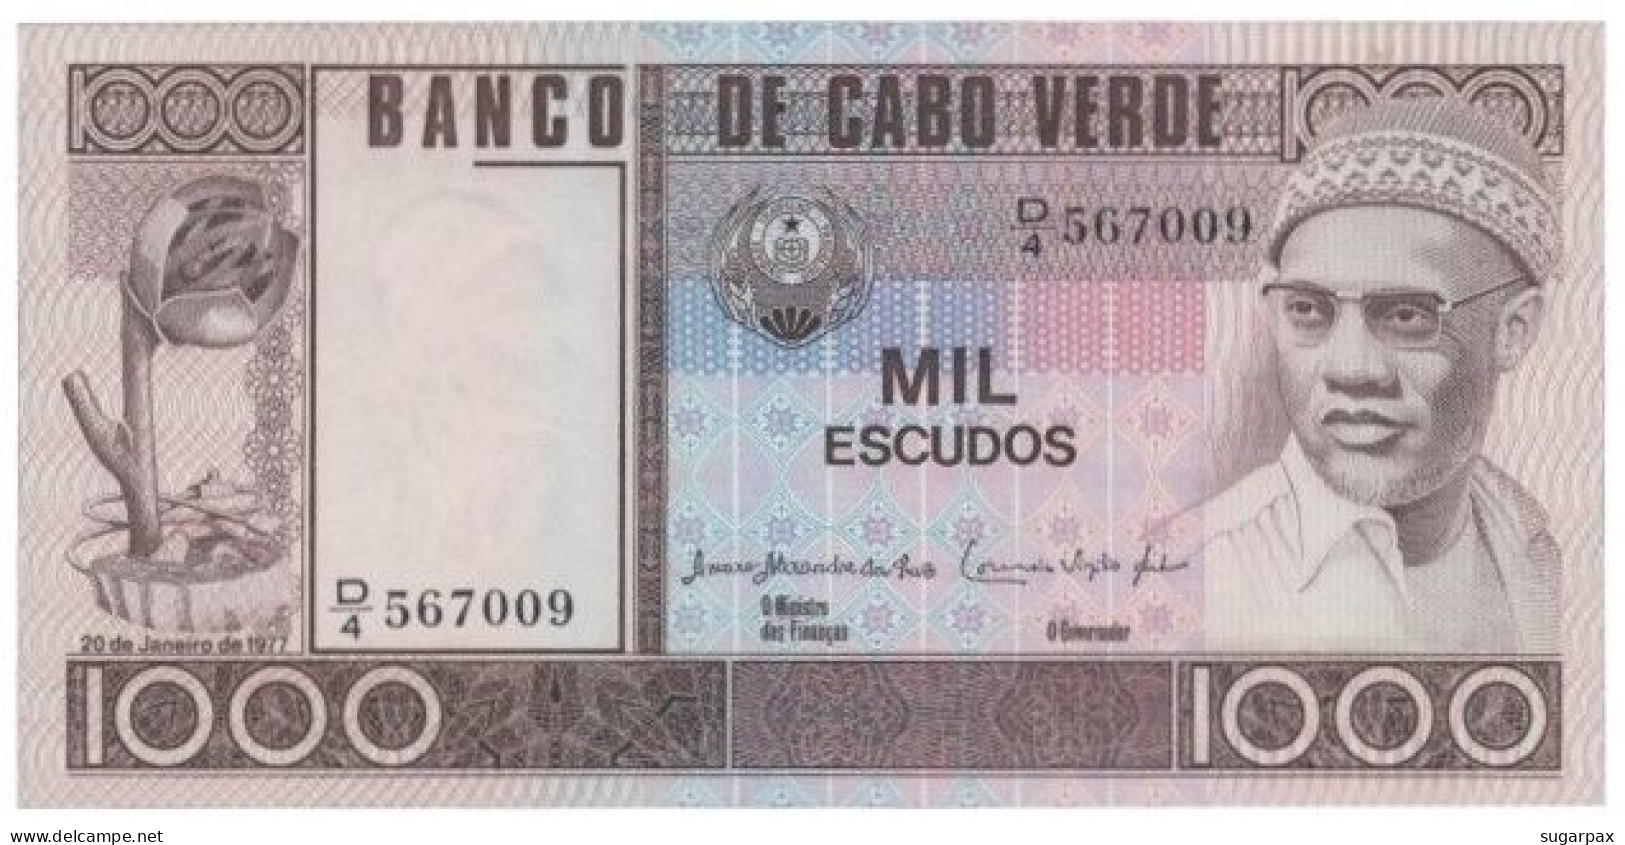 CAPE VERDE - 1000 ESCUDOS - 20.01.1977 - Pick 56.a - Unc. - Amilcar Cabral - 1 000 - Capo Verde